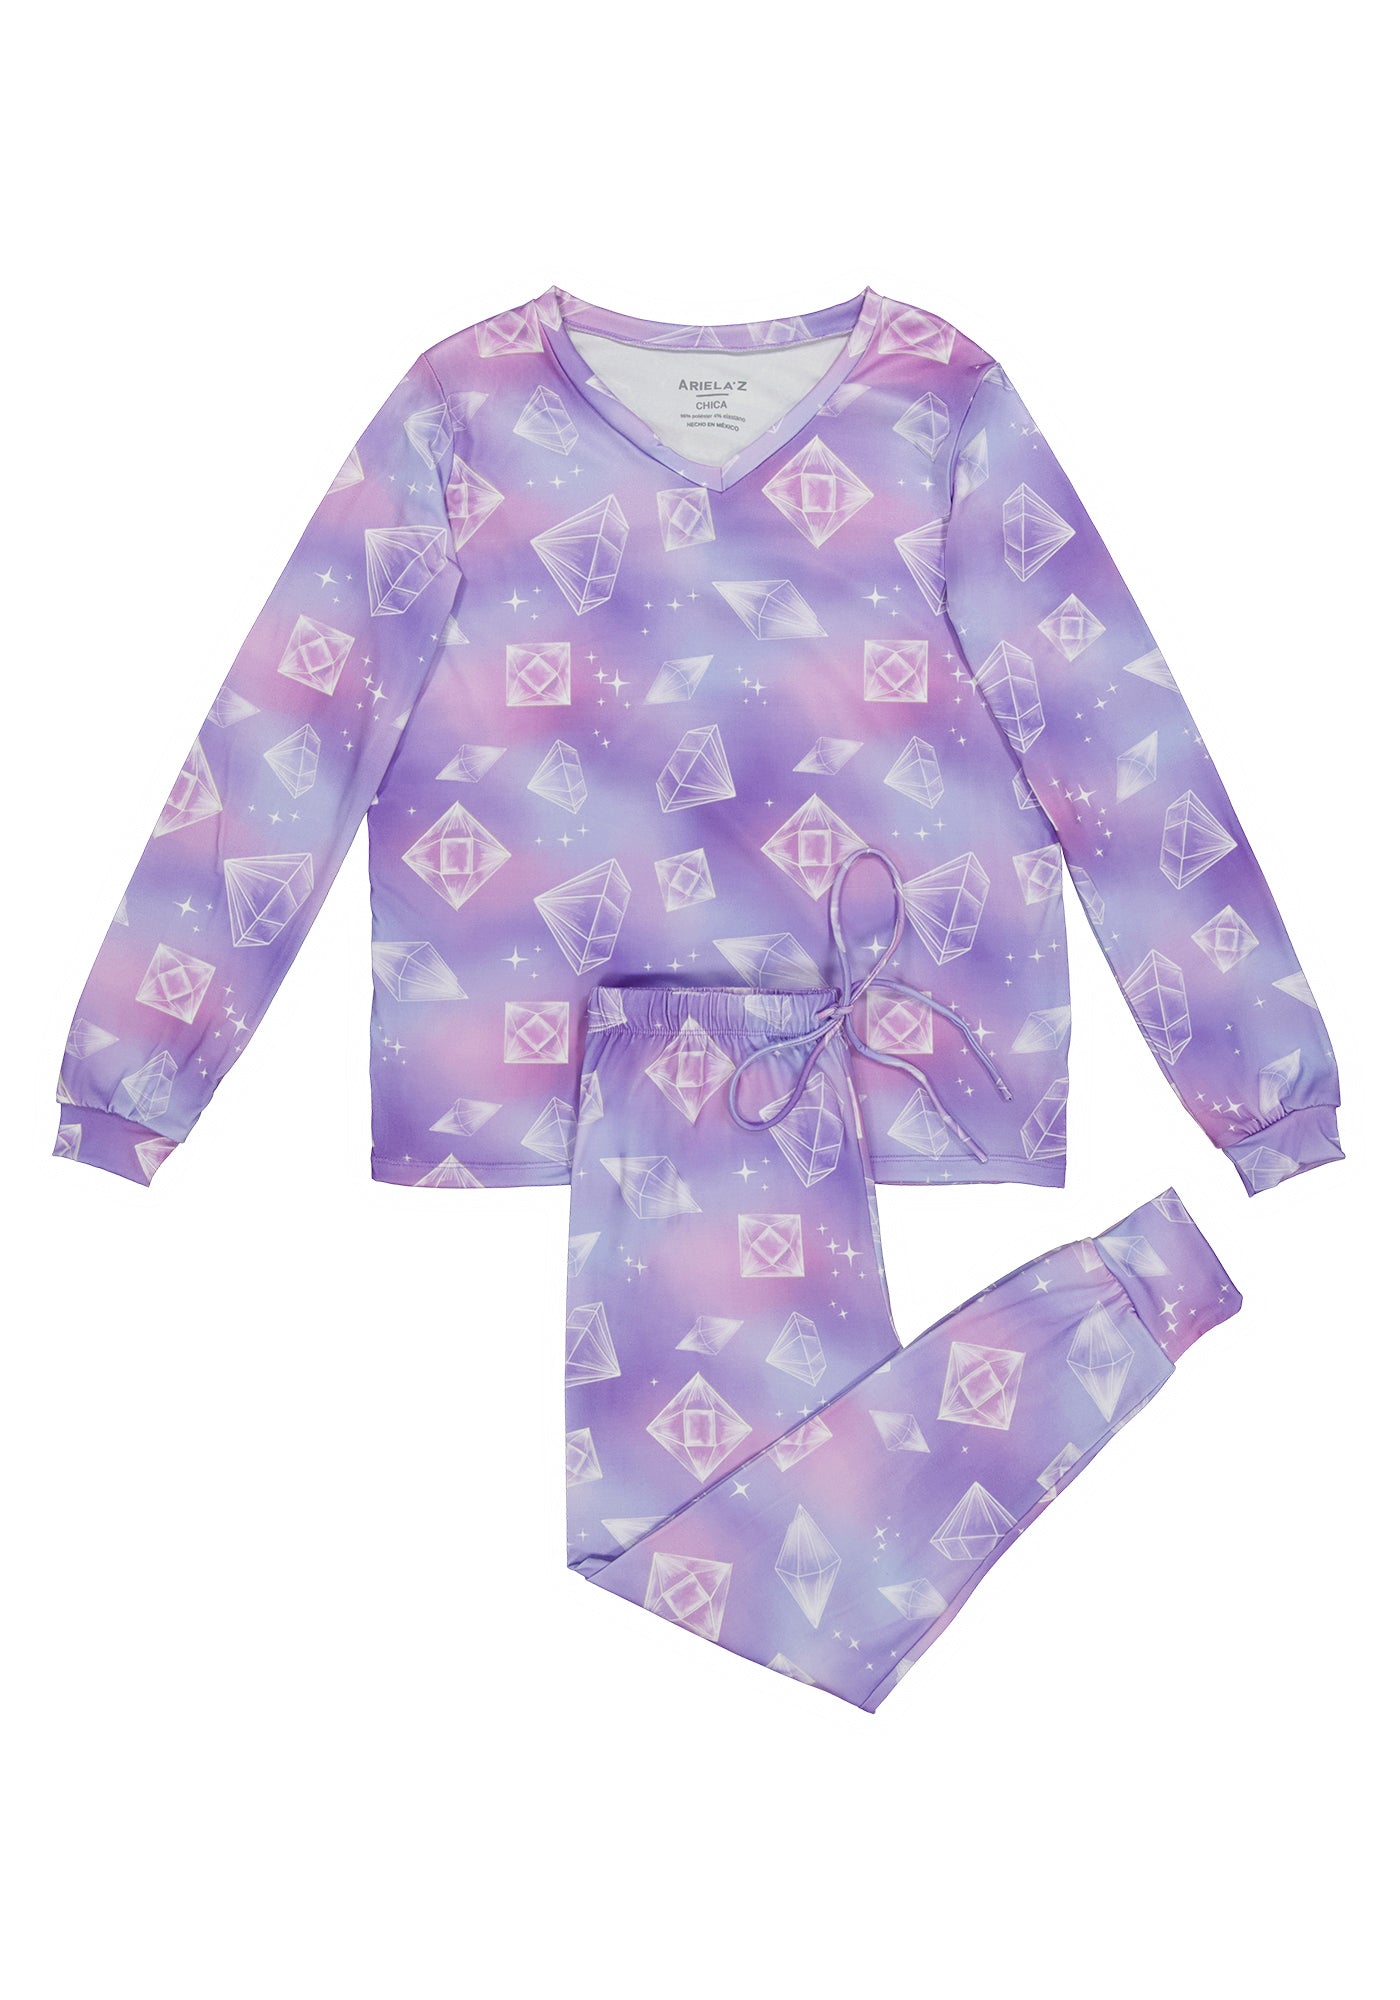 Long Sleeve Pajamas with Purple Jewel Print